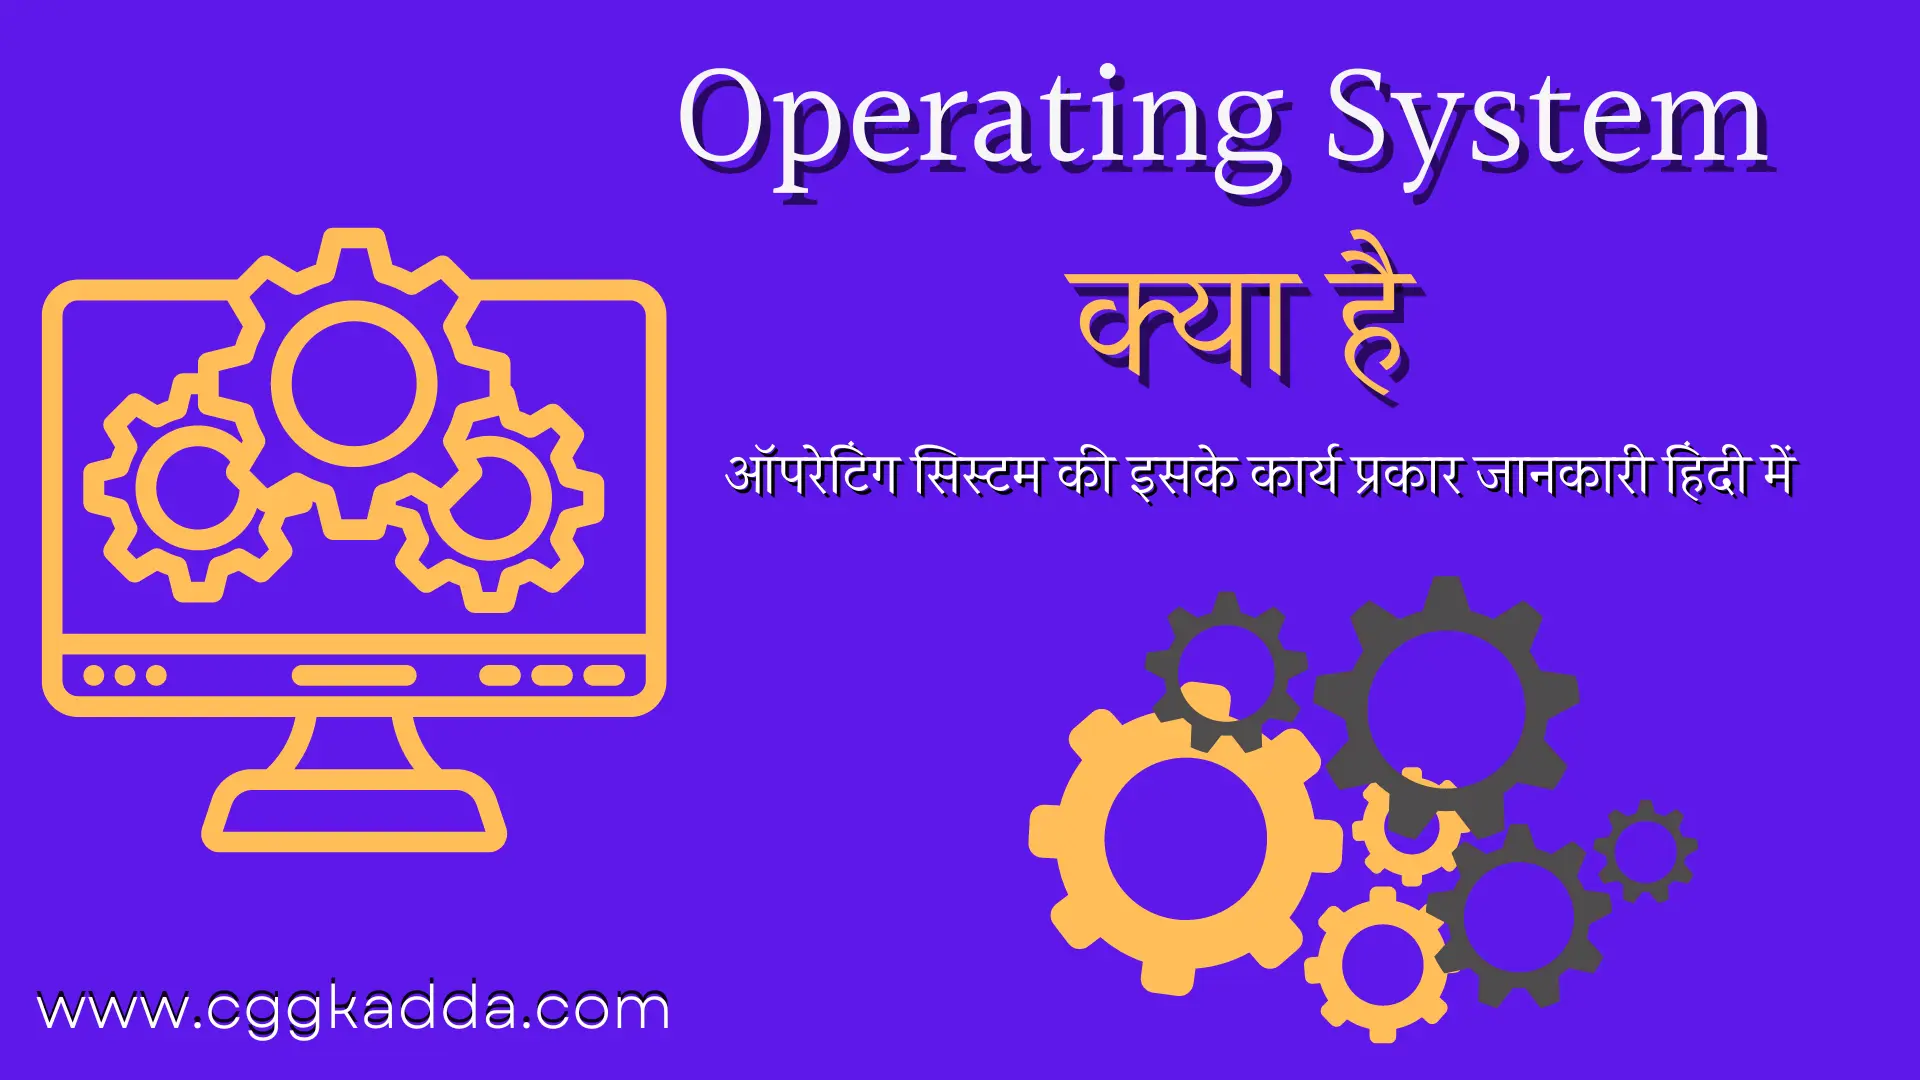 ऑपरेटिंग सिस्टम क्या है इसके कार्य प्रकार (Operating System in Hindi)